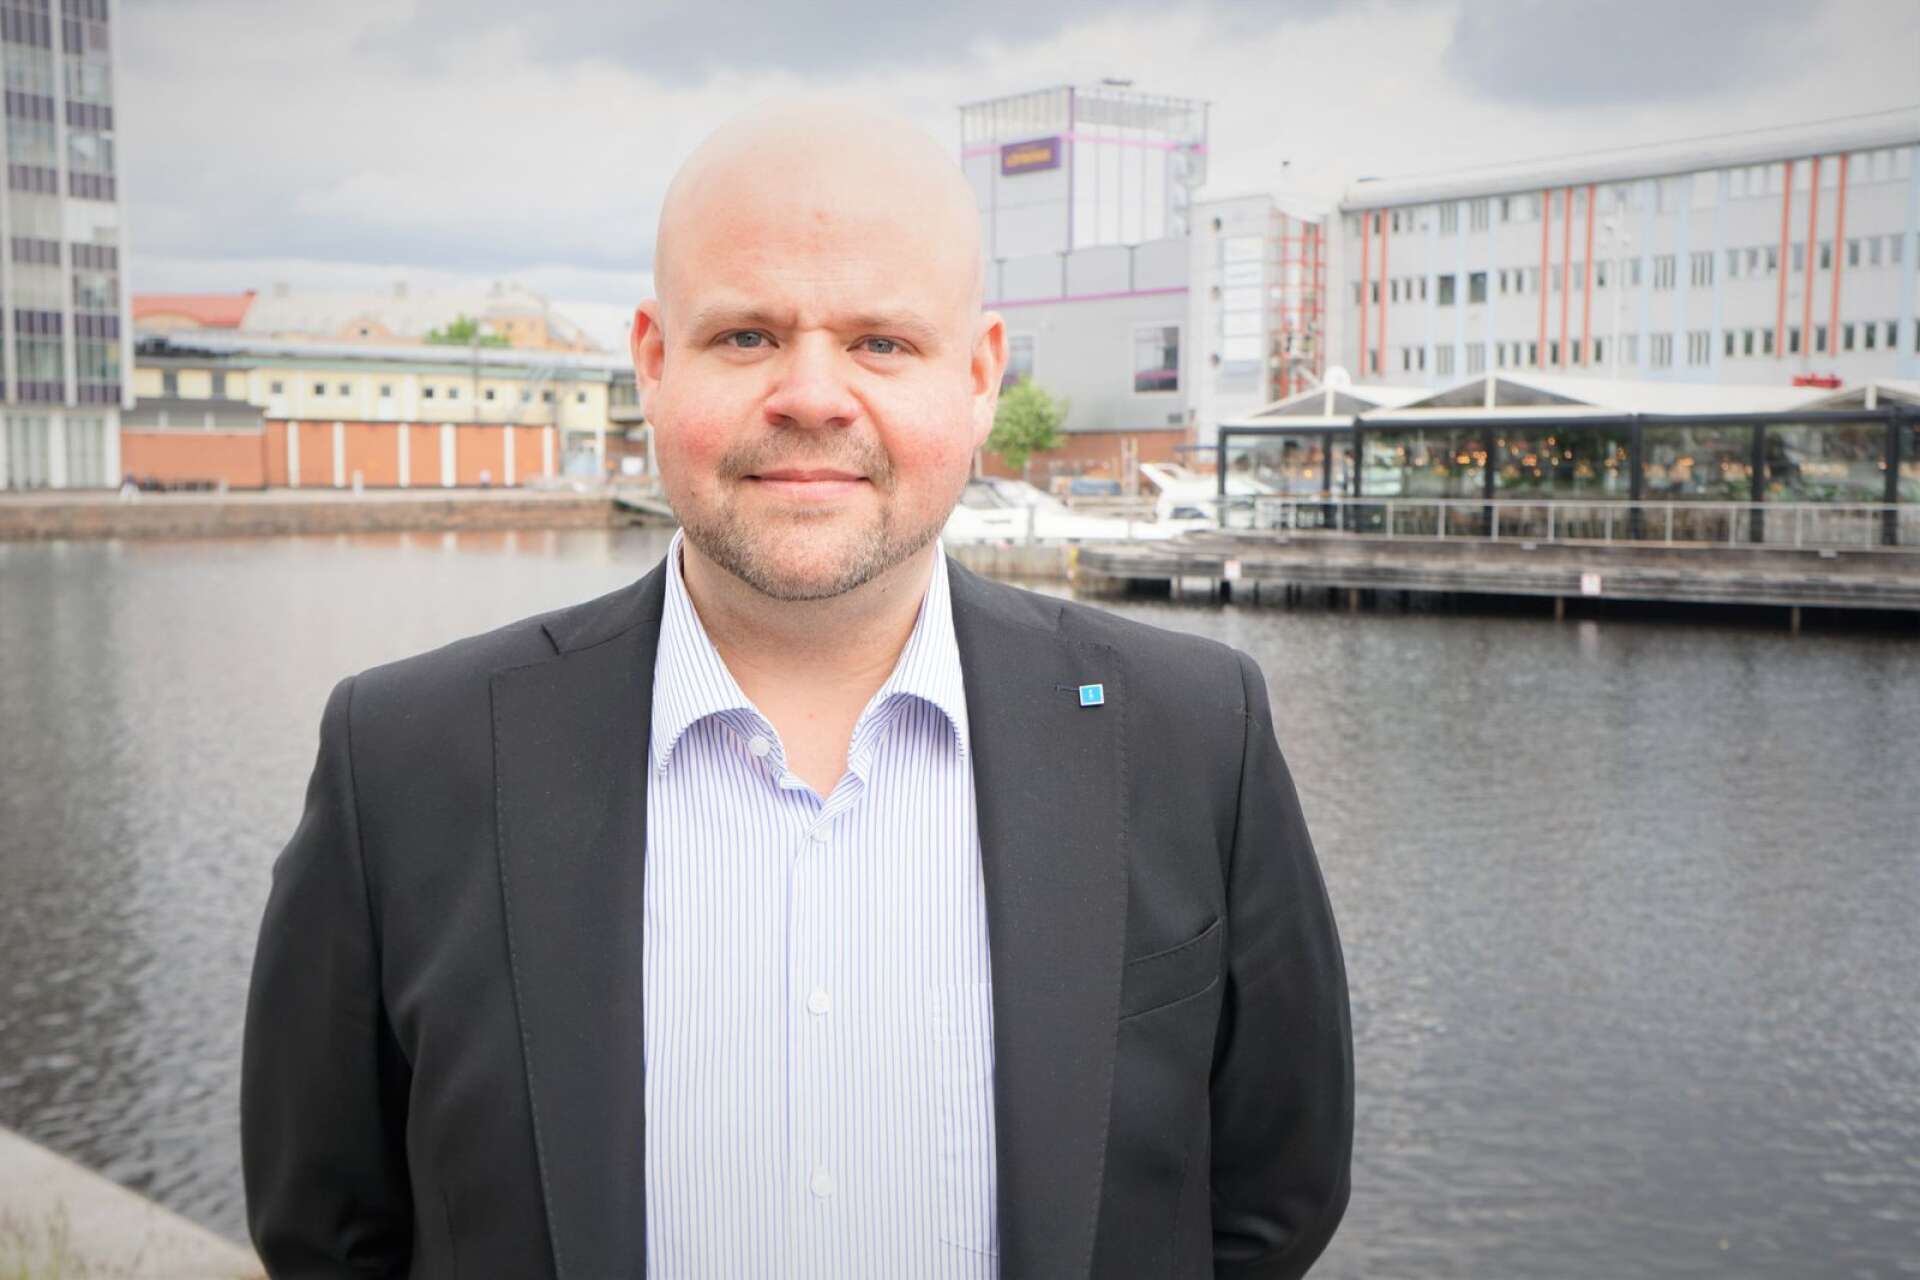 Kristdemokraternas partisekreterare, värmlänningen Peter Kullgren, får en central roll i partiets valkampanj.